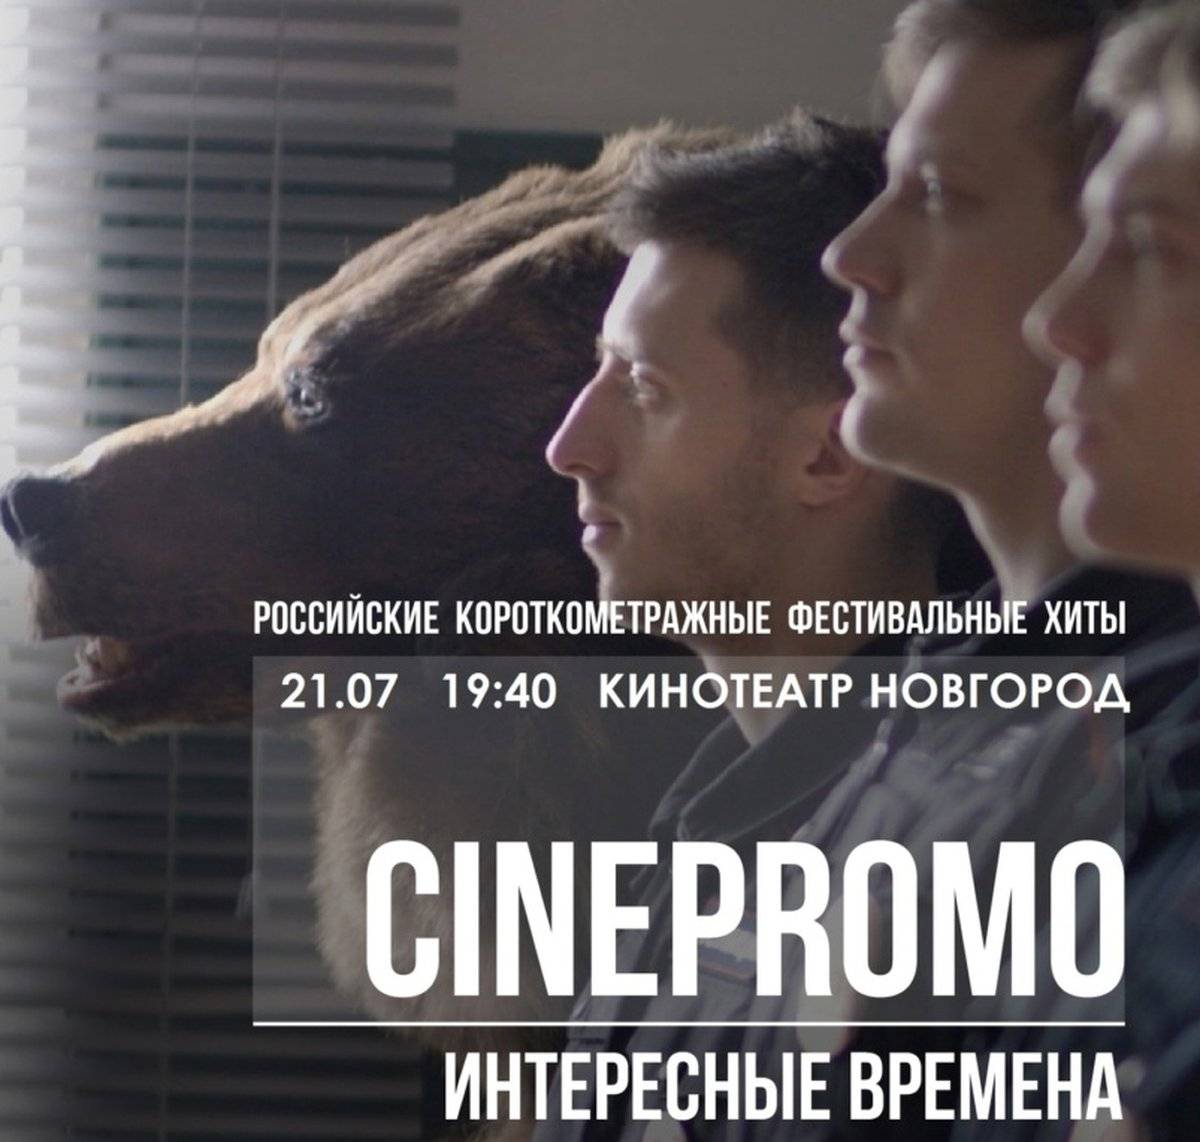 Компания Cinepromo – крупнейший российский фестивальный дистрибьютор.